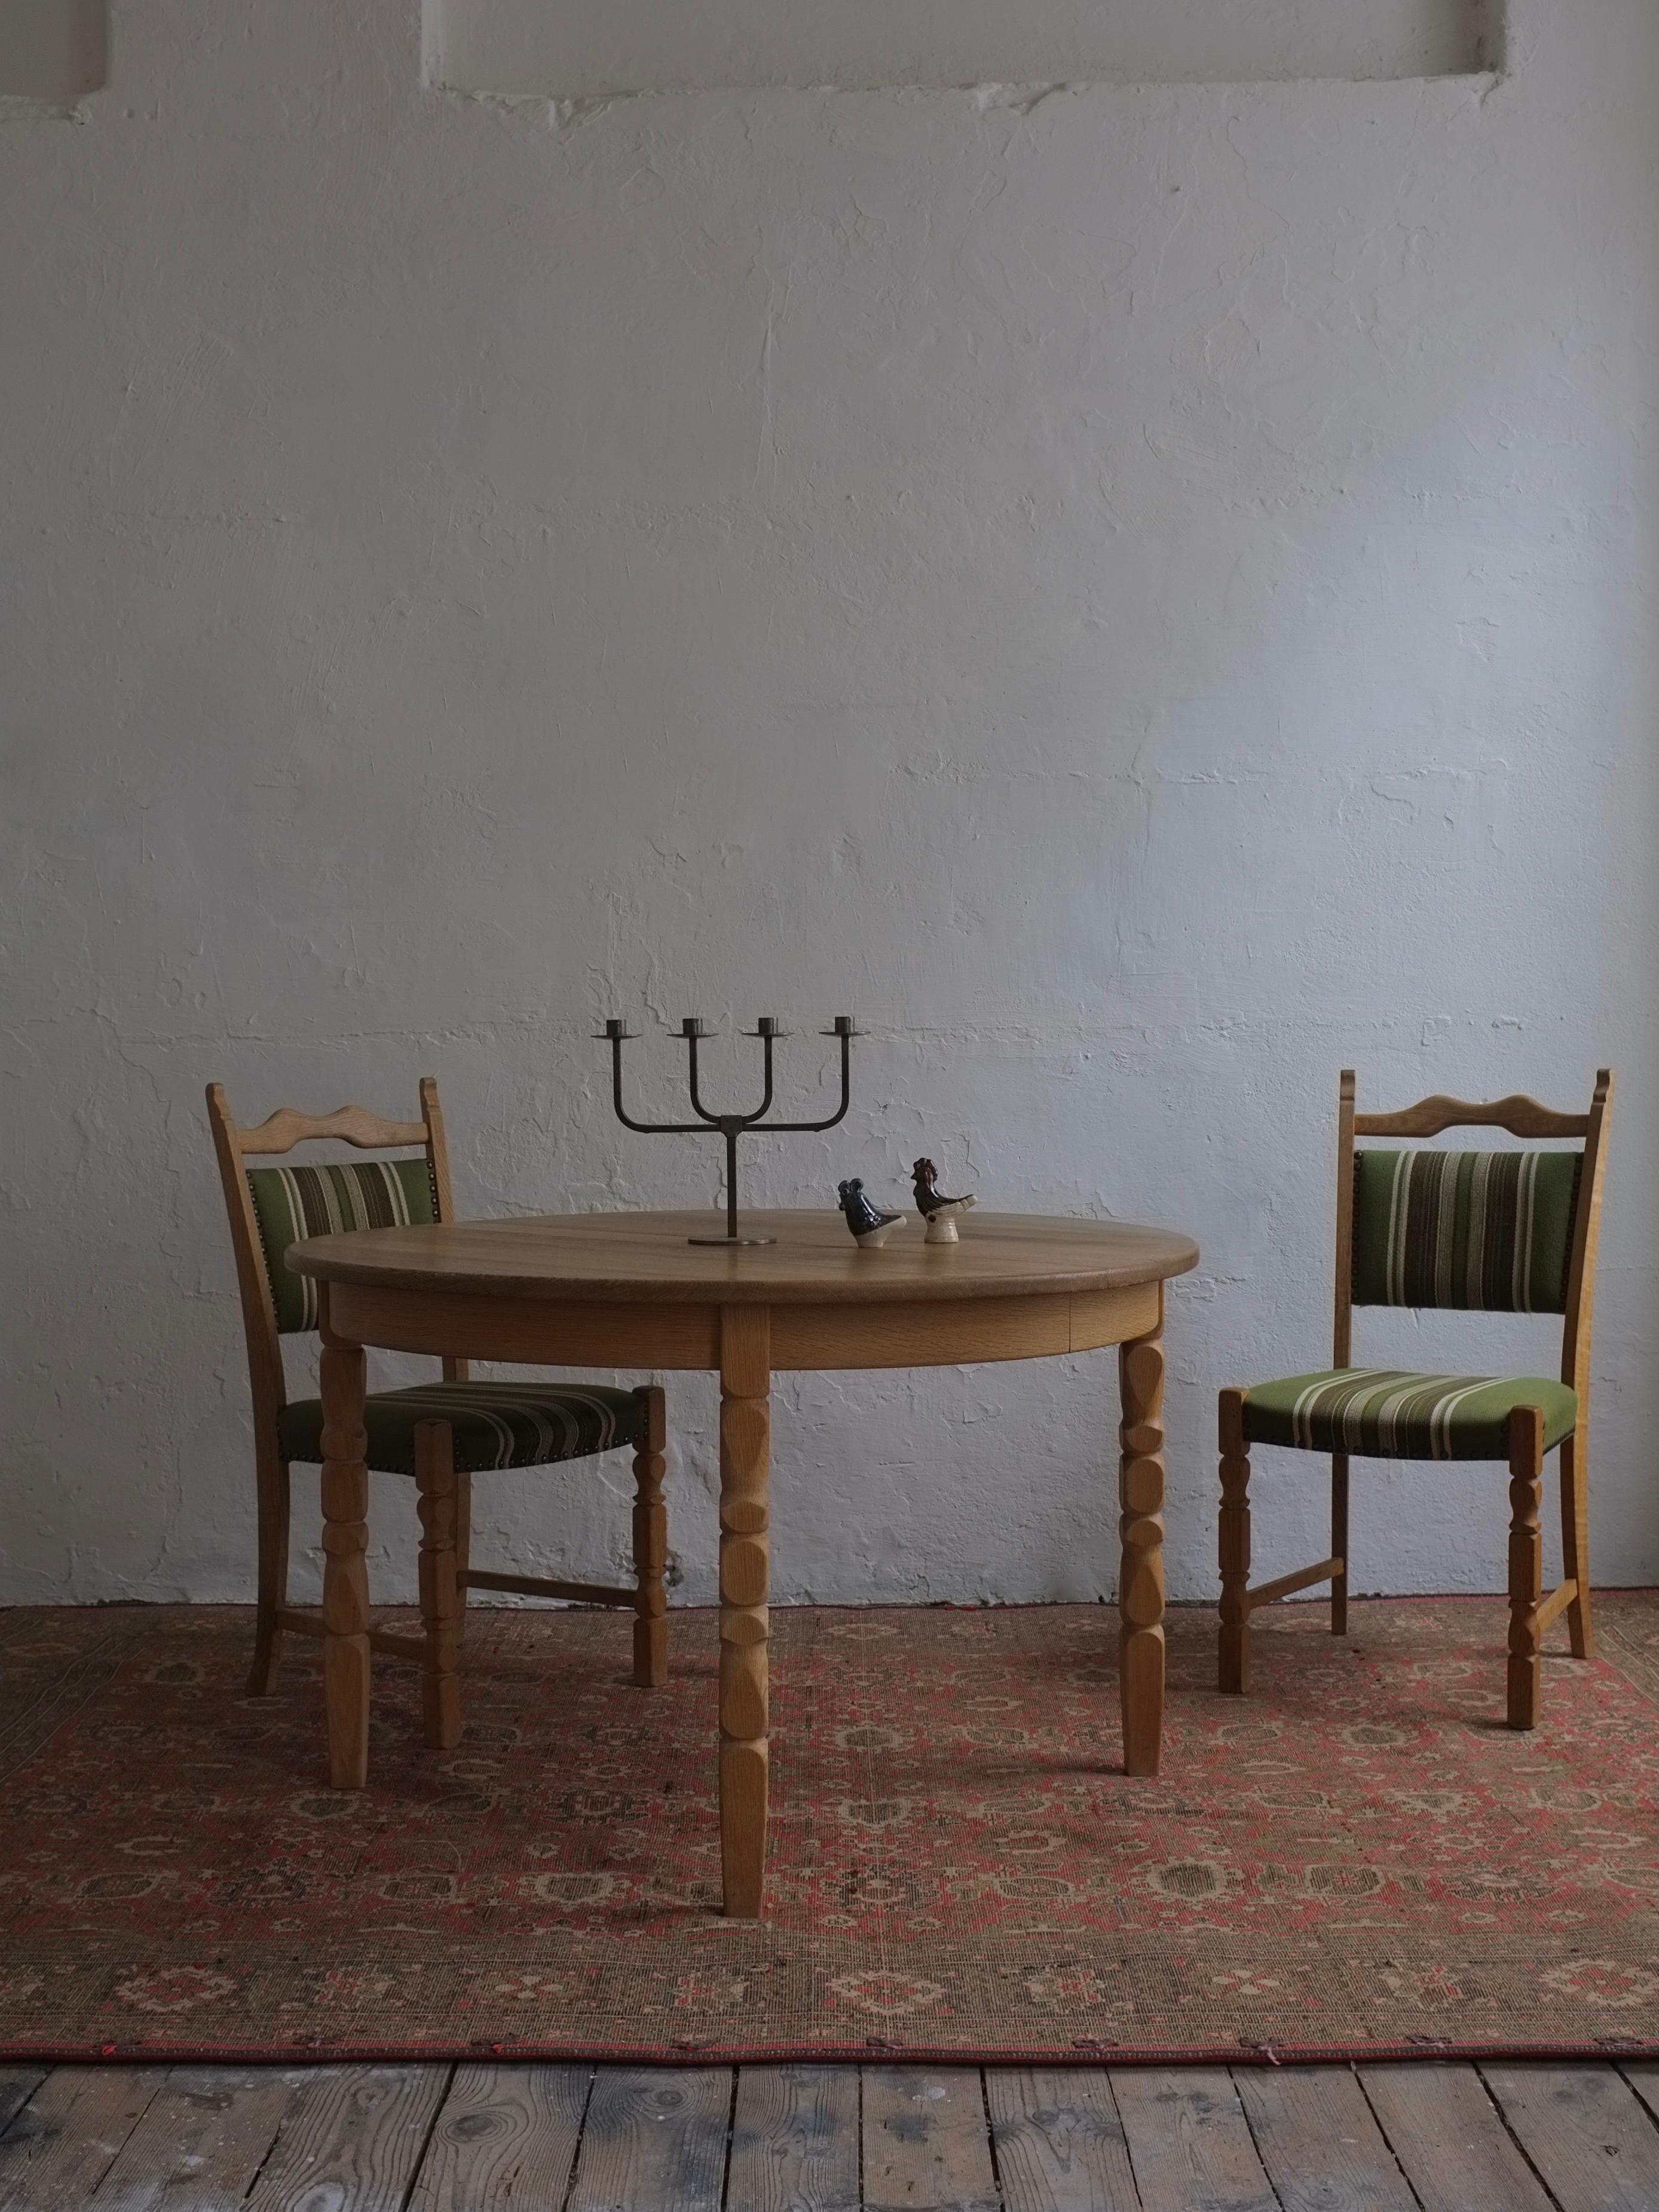 Table de salle à manger en chêne massif sculpté, conçue avec deux plateaux supplémentaires pour la rallonge. J'ai plusieurs ensembles de chaises et de tables de Henning Kjaernulf, n'hésitez pas à demander si vous êtes intéressé.

Informations